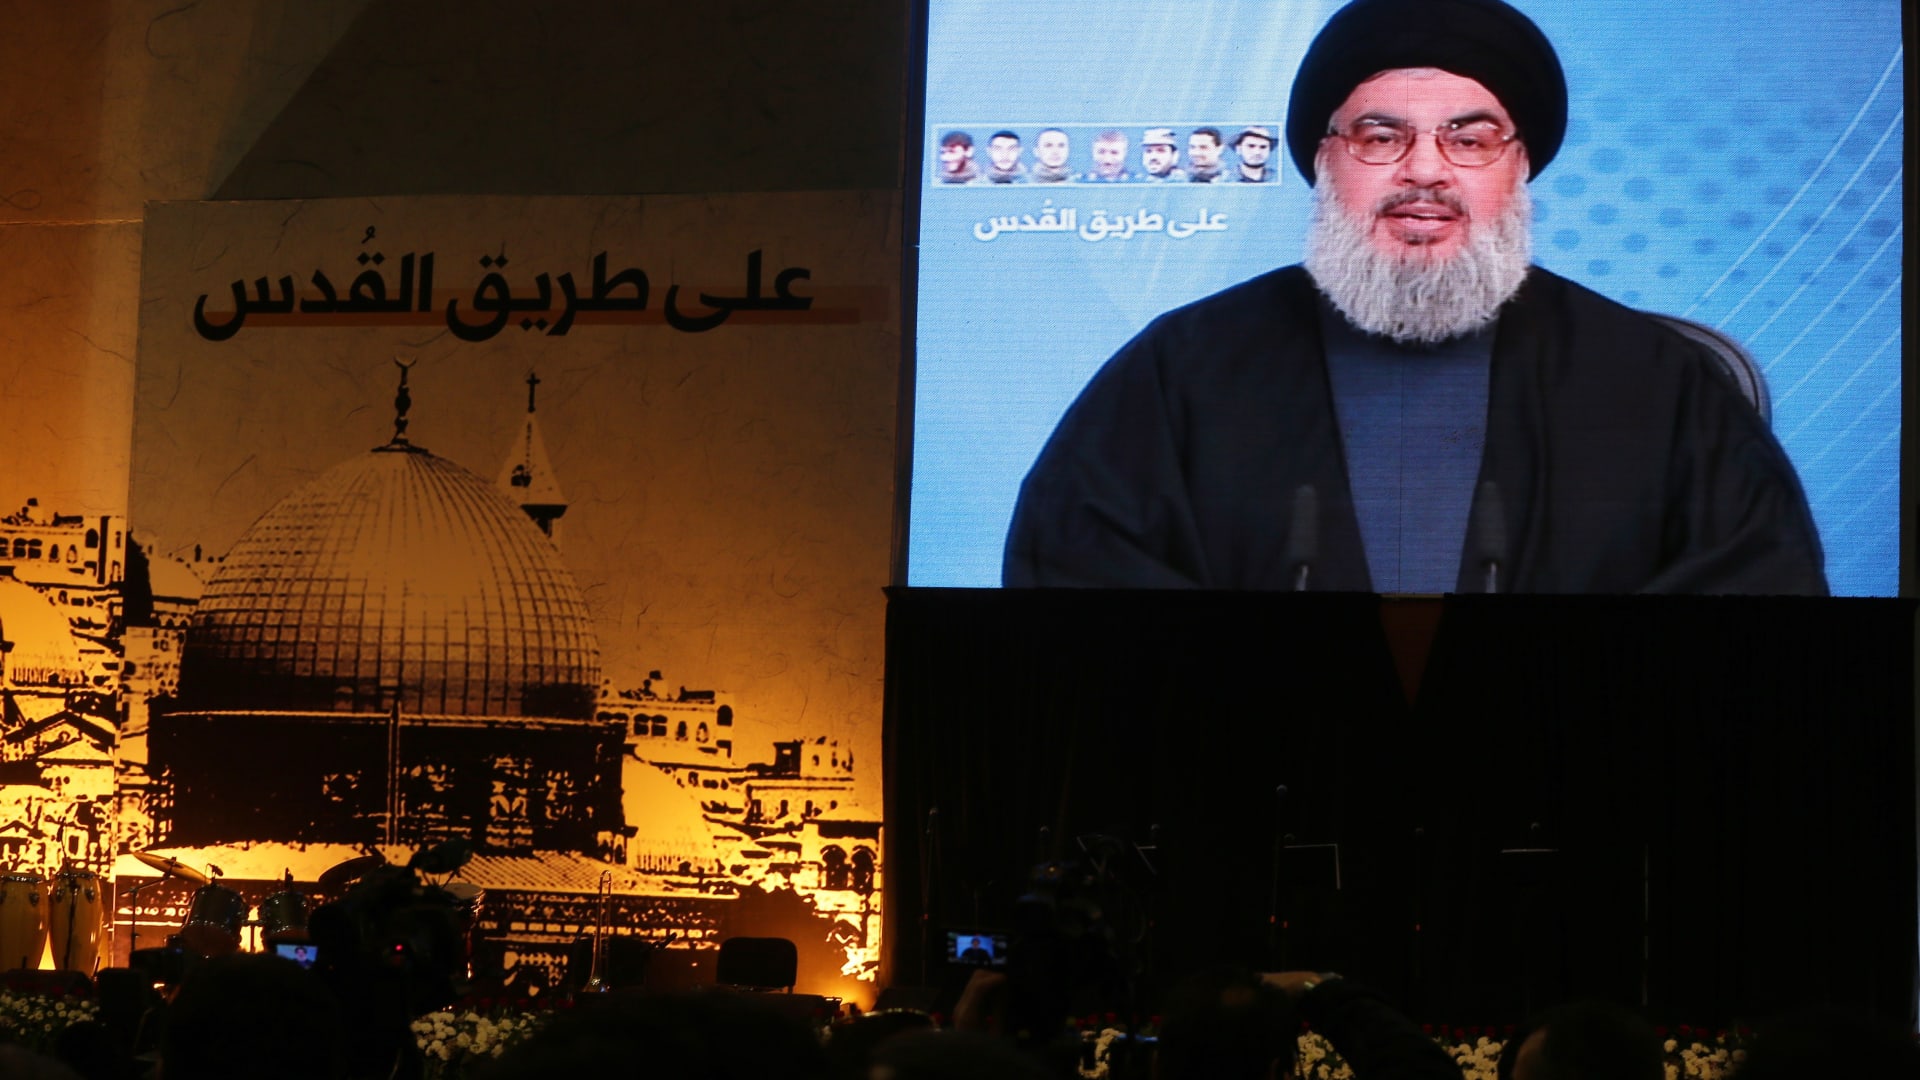 وزير خارجية السعودية يتحدث لـCNN عن سعد الحريري وتوسّع حزب الله في لبنان.. ماذا قال؟